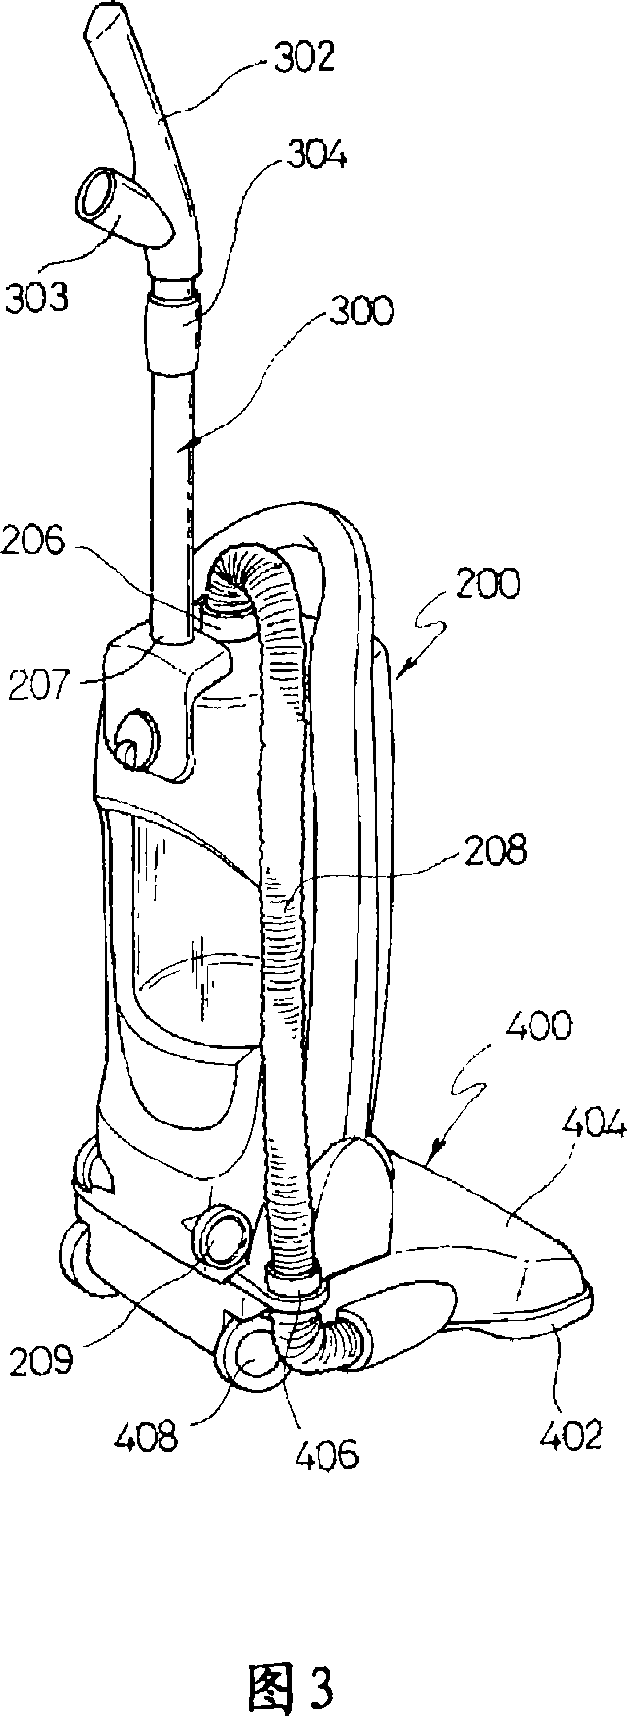 Multi-functional vacuum cleaner